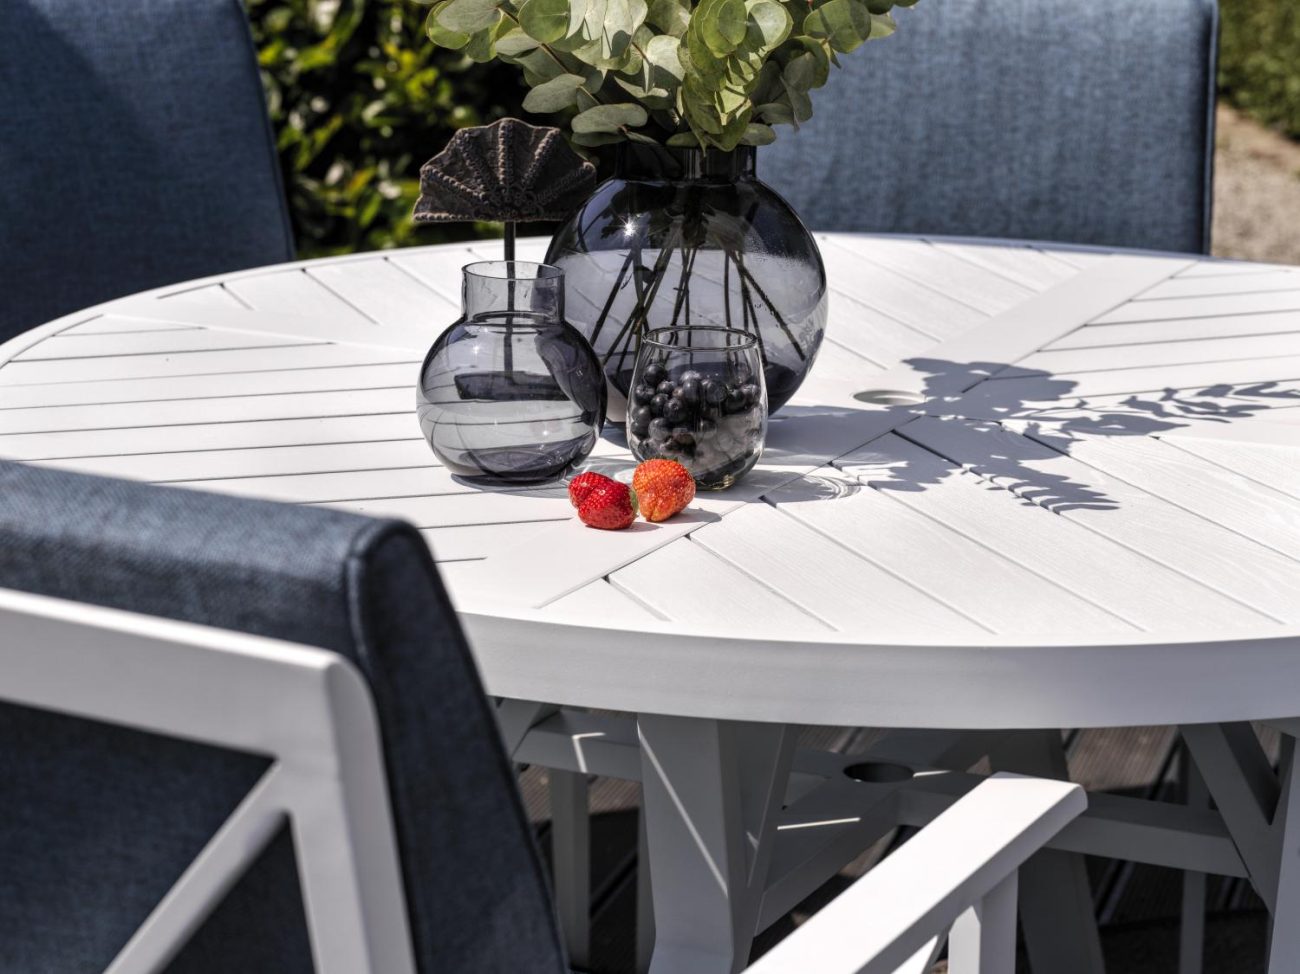 Der Gartenstuhl Sottenville überzeugt mit seinem modernen Design. Gefertigt wurde er aus Metall, welches einen weißen Farbton besitzt. Das Gestell ist auch aus Metall und hat eine weiße Farbe. Die Sitzhöhe des Stuhls beträgt 48 cm.